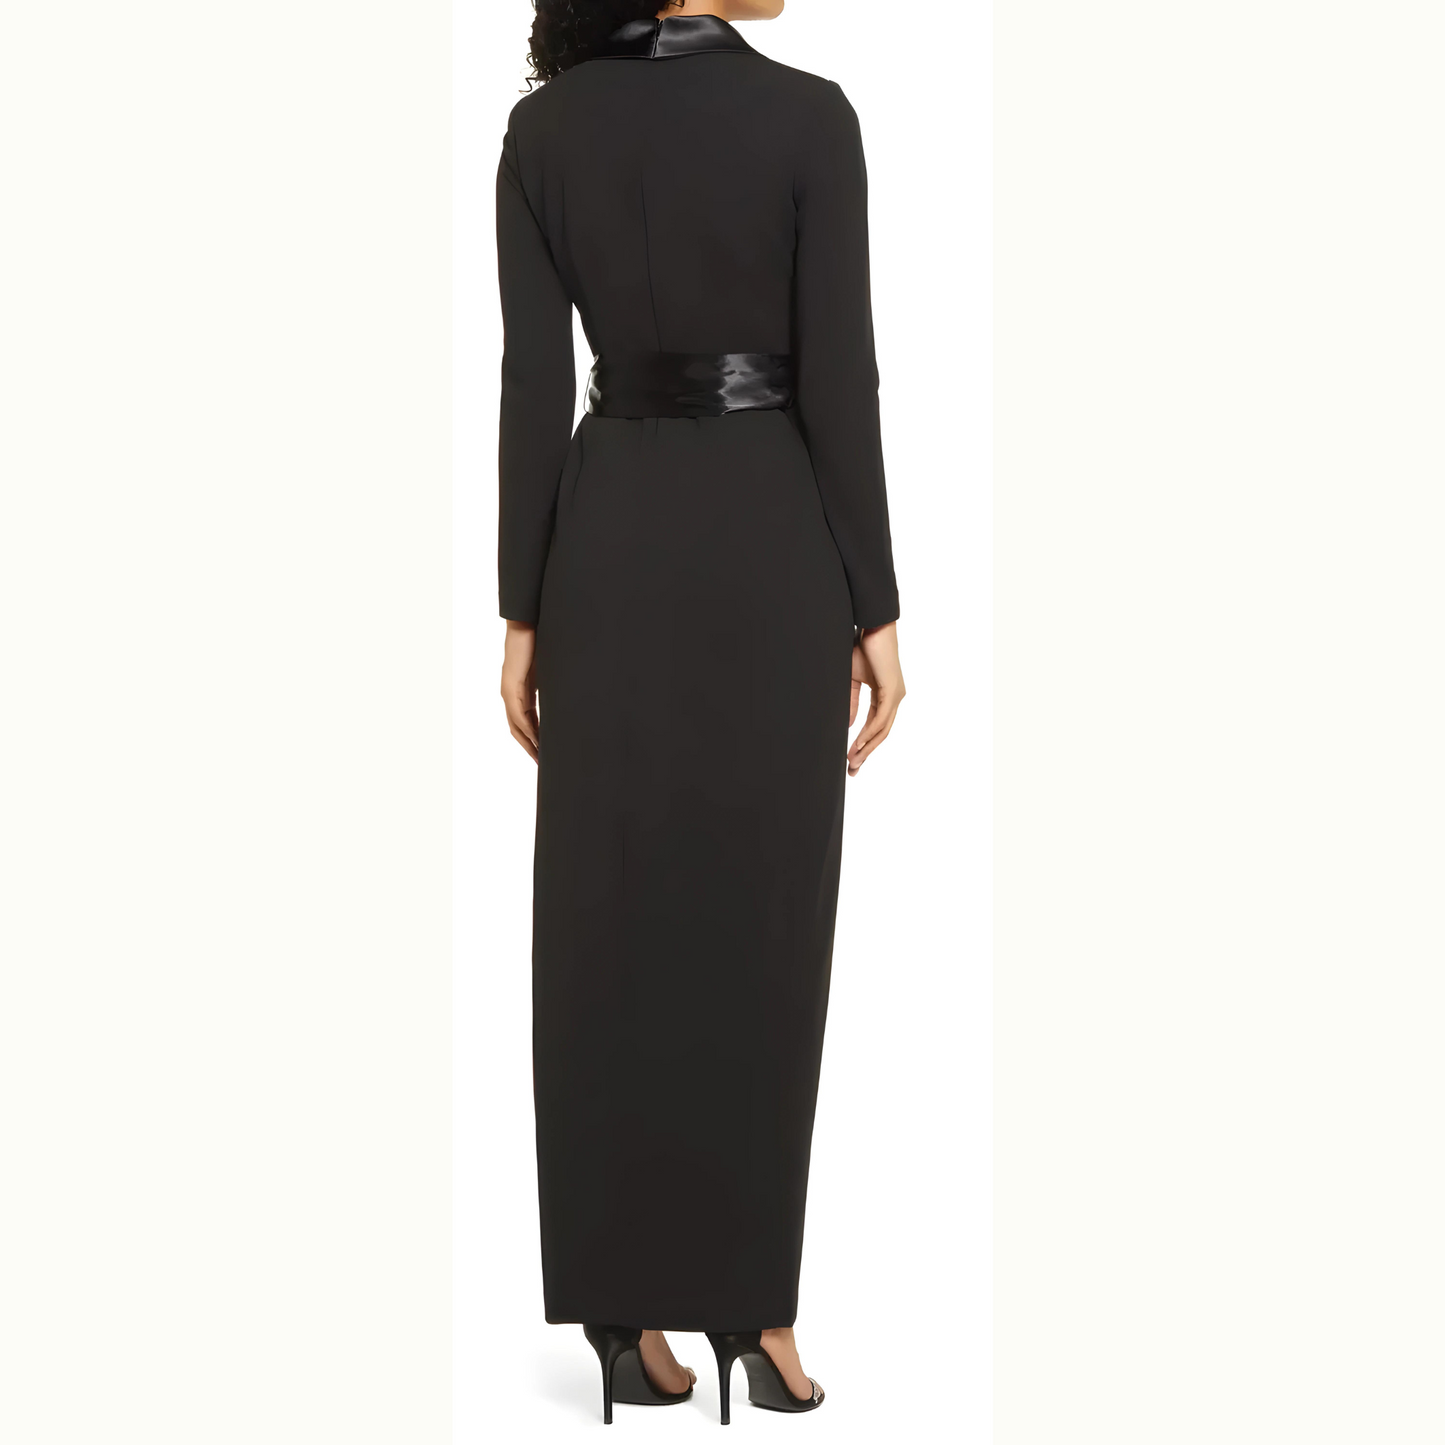 Elegance Redefined: The Tuxedo Femme Dress